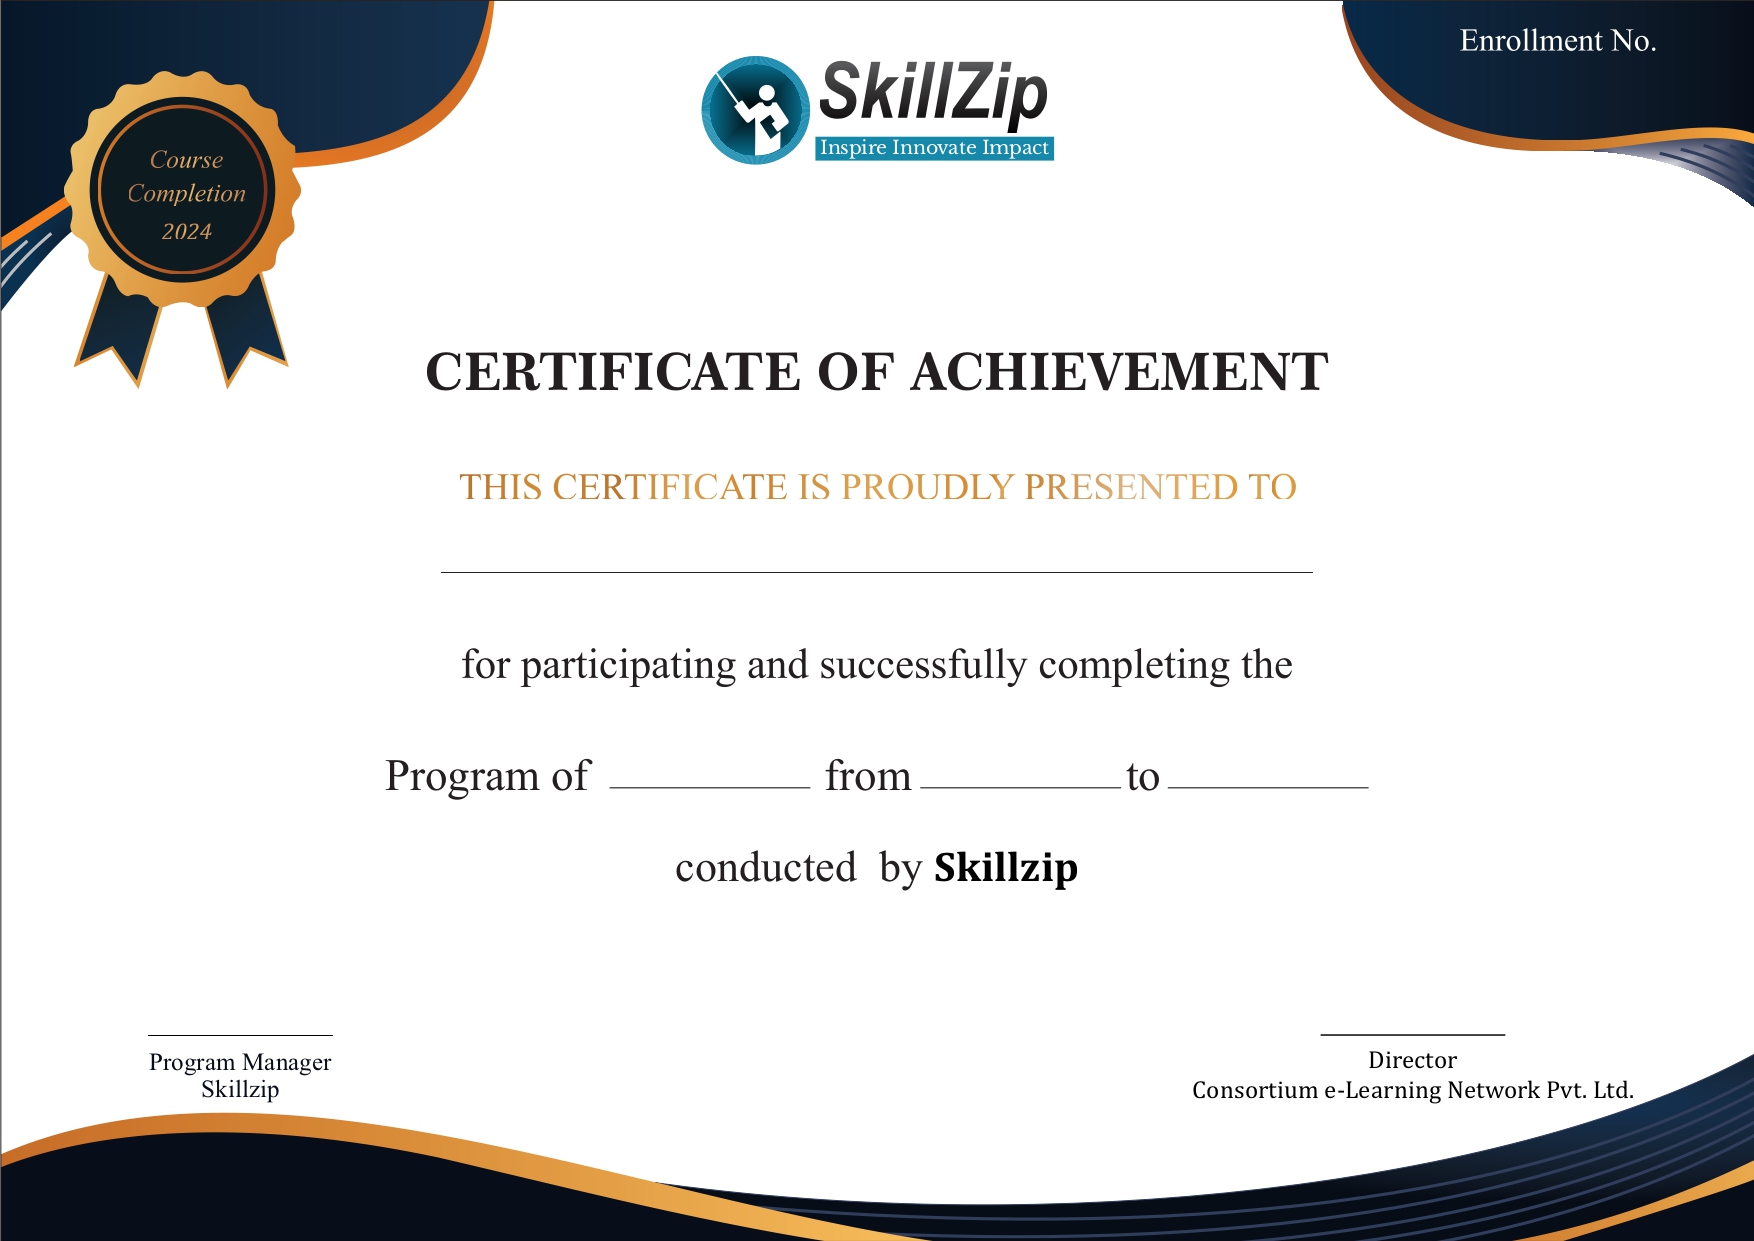 Skillzip Program Certificate